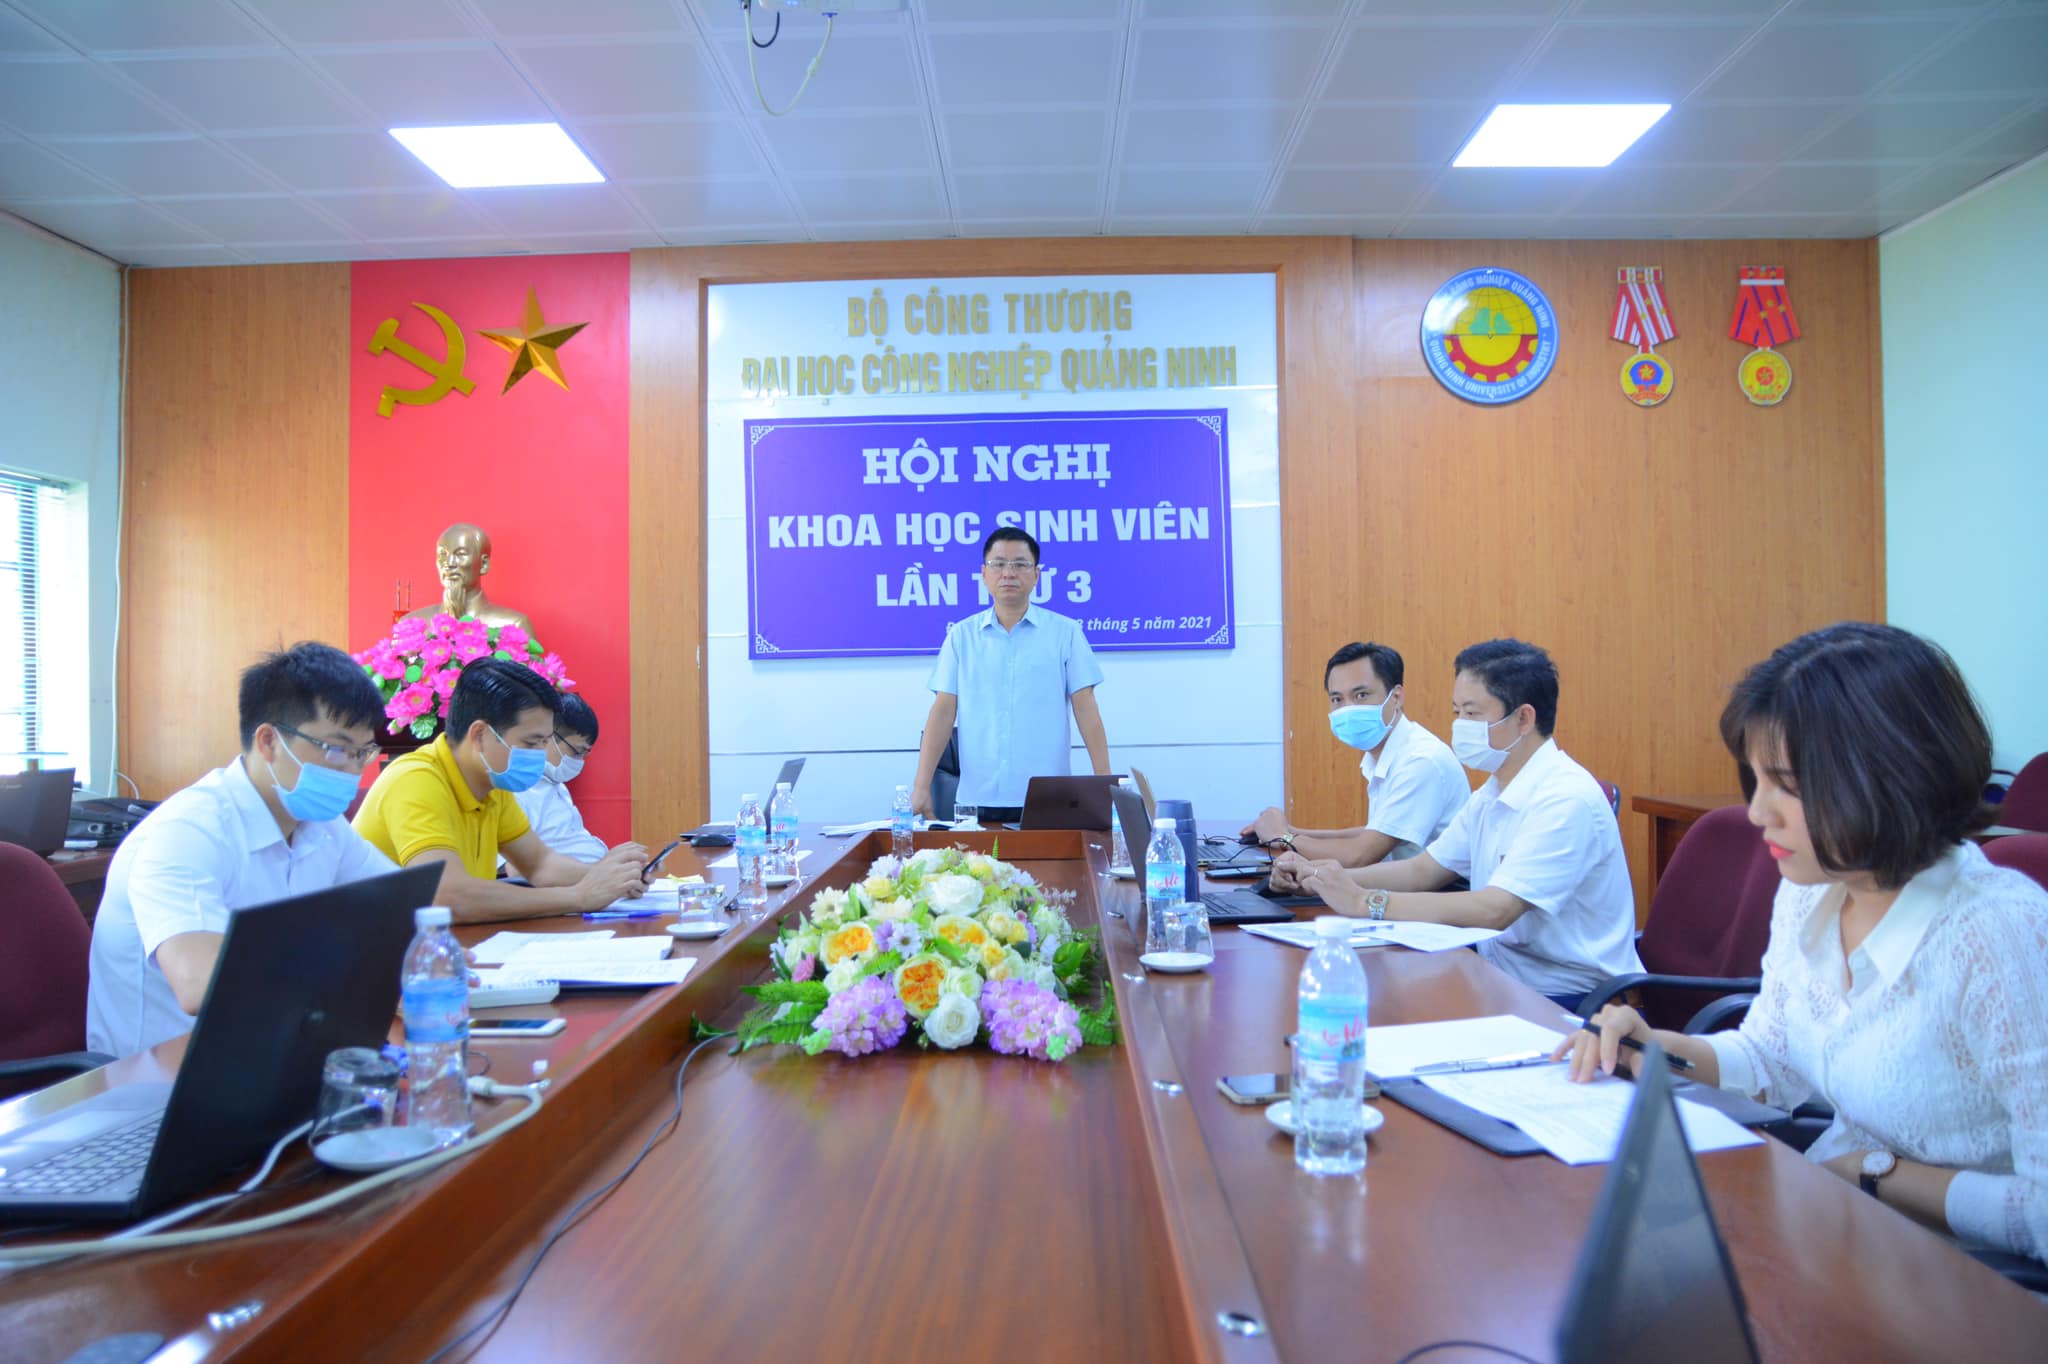 Hội nghị khoa học sinh viên trường Đại học Công nghiệp Quảng Ninh  năm 2021 thành công tốt đẹp